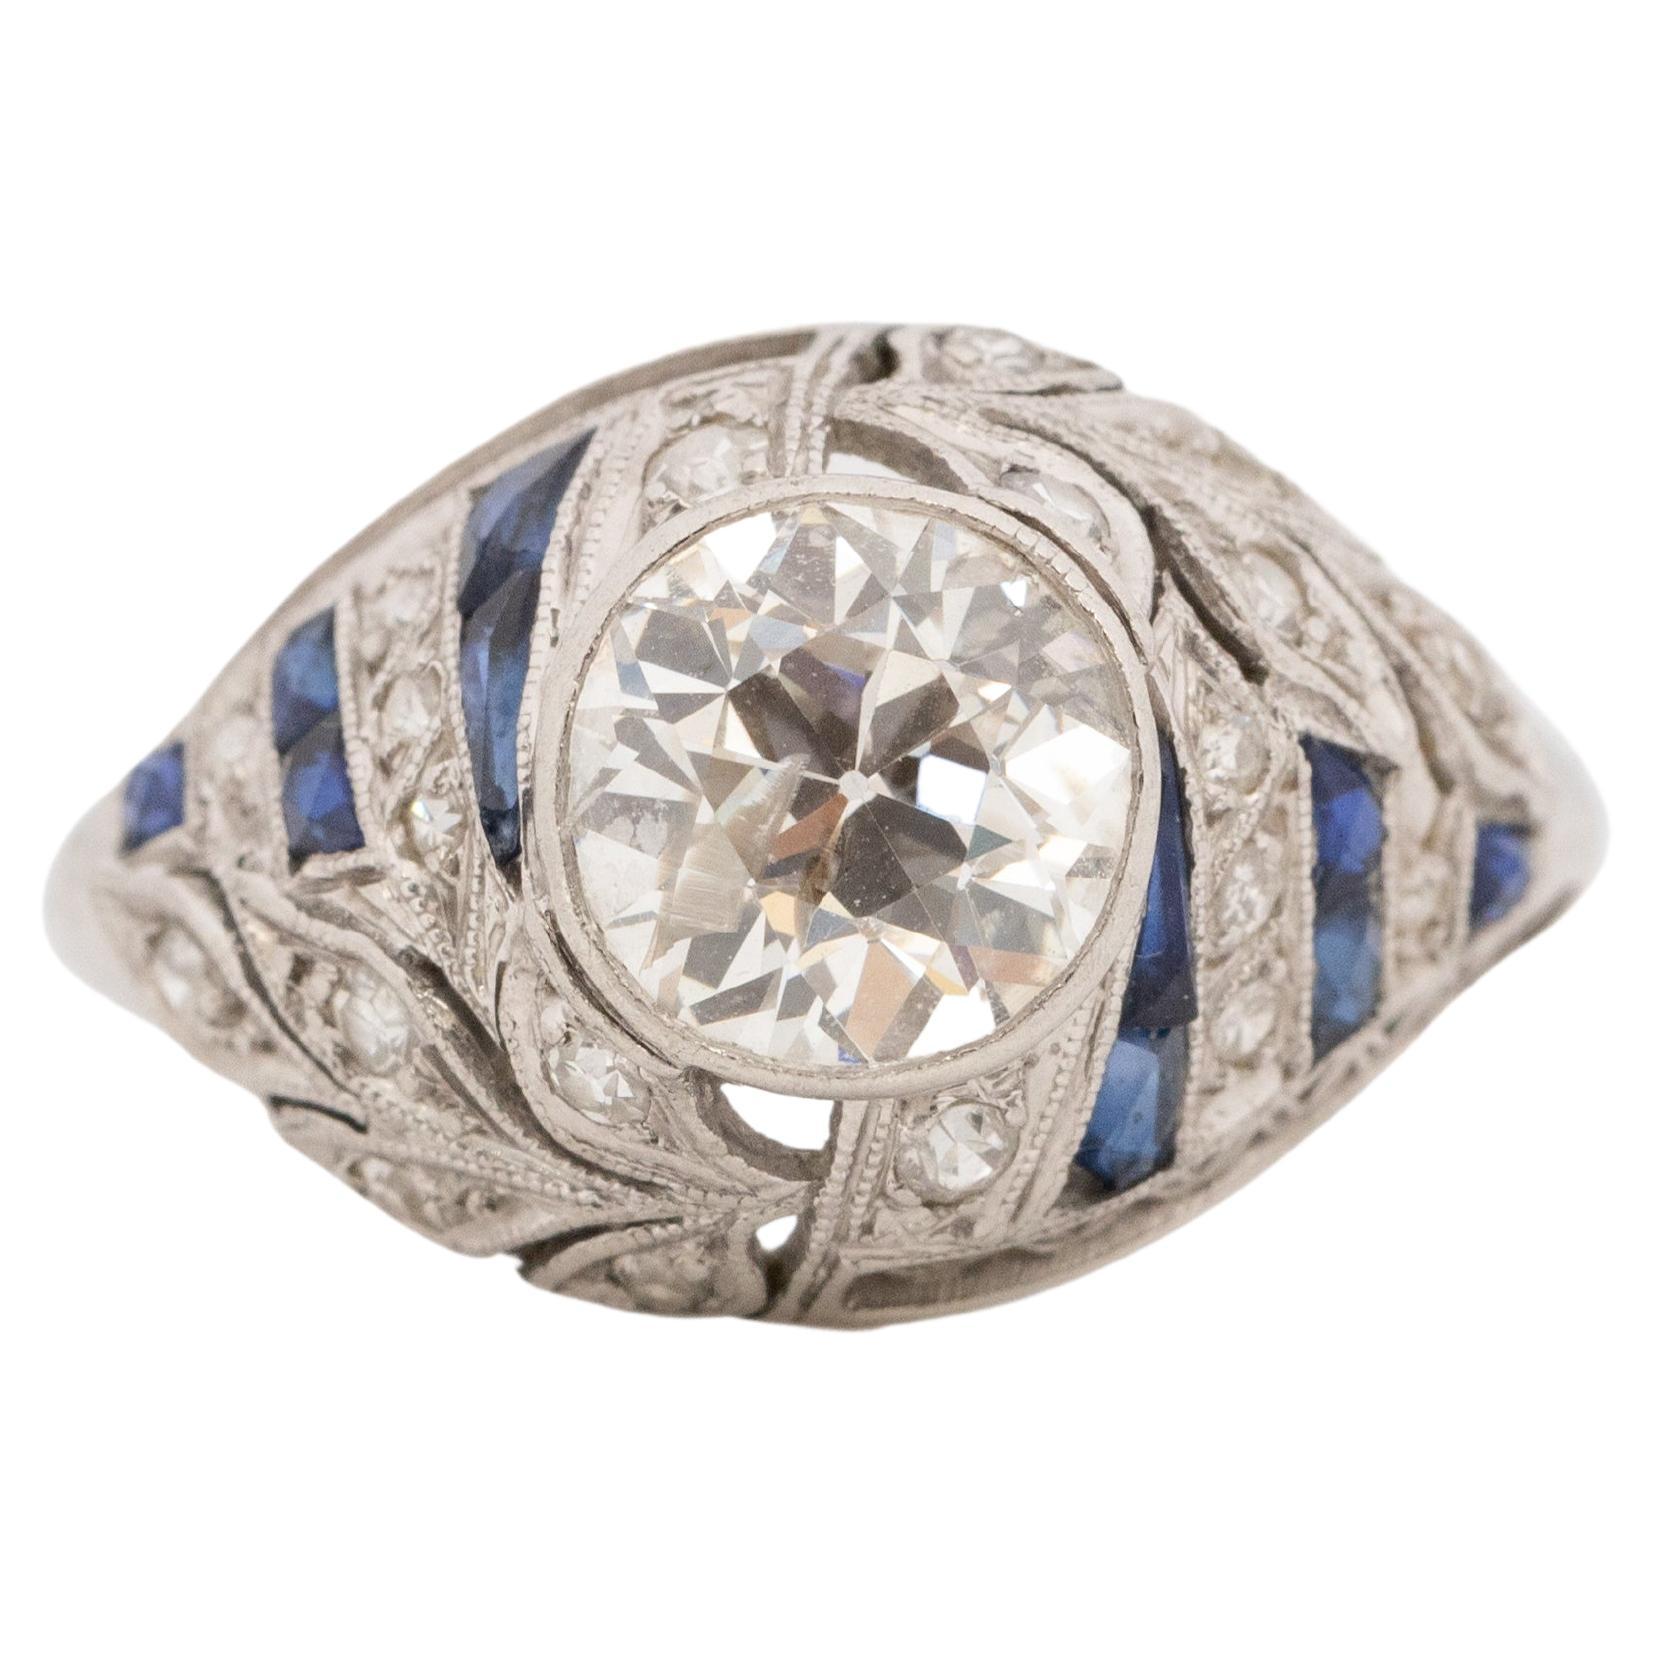 1.55 Carat Art Deco Diamond Platinum Engagement Ring